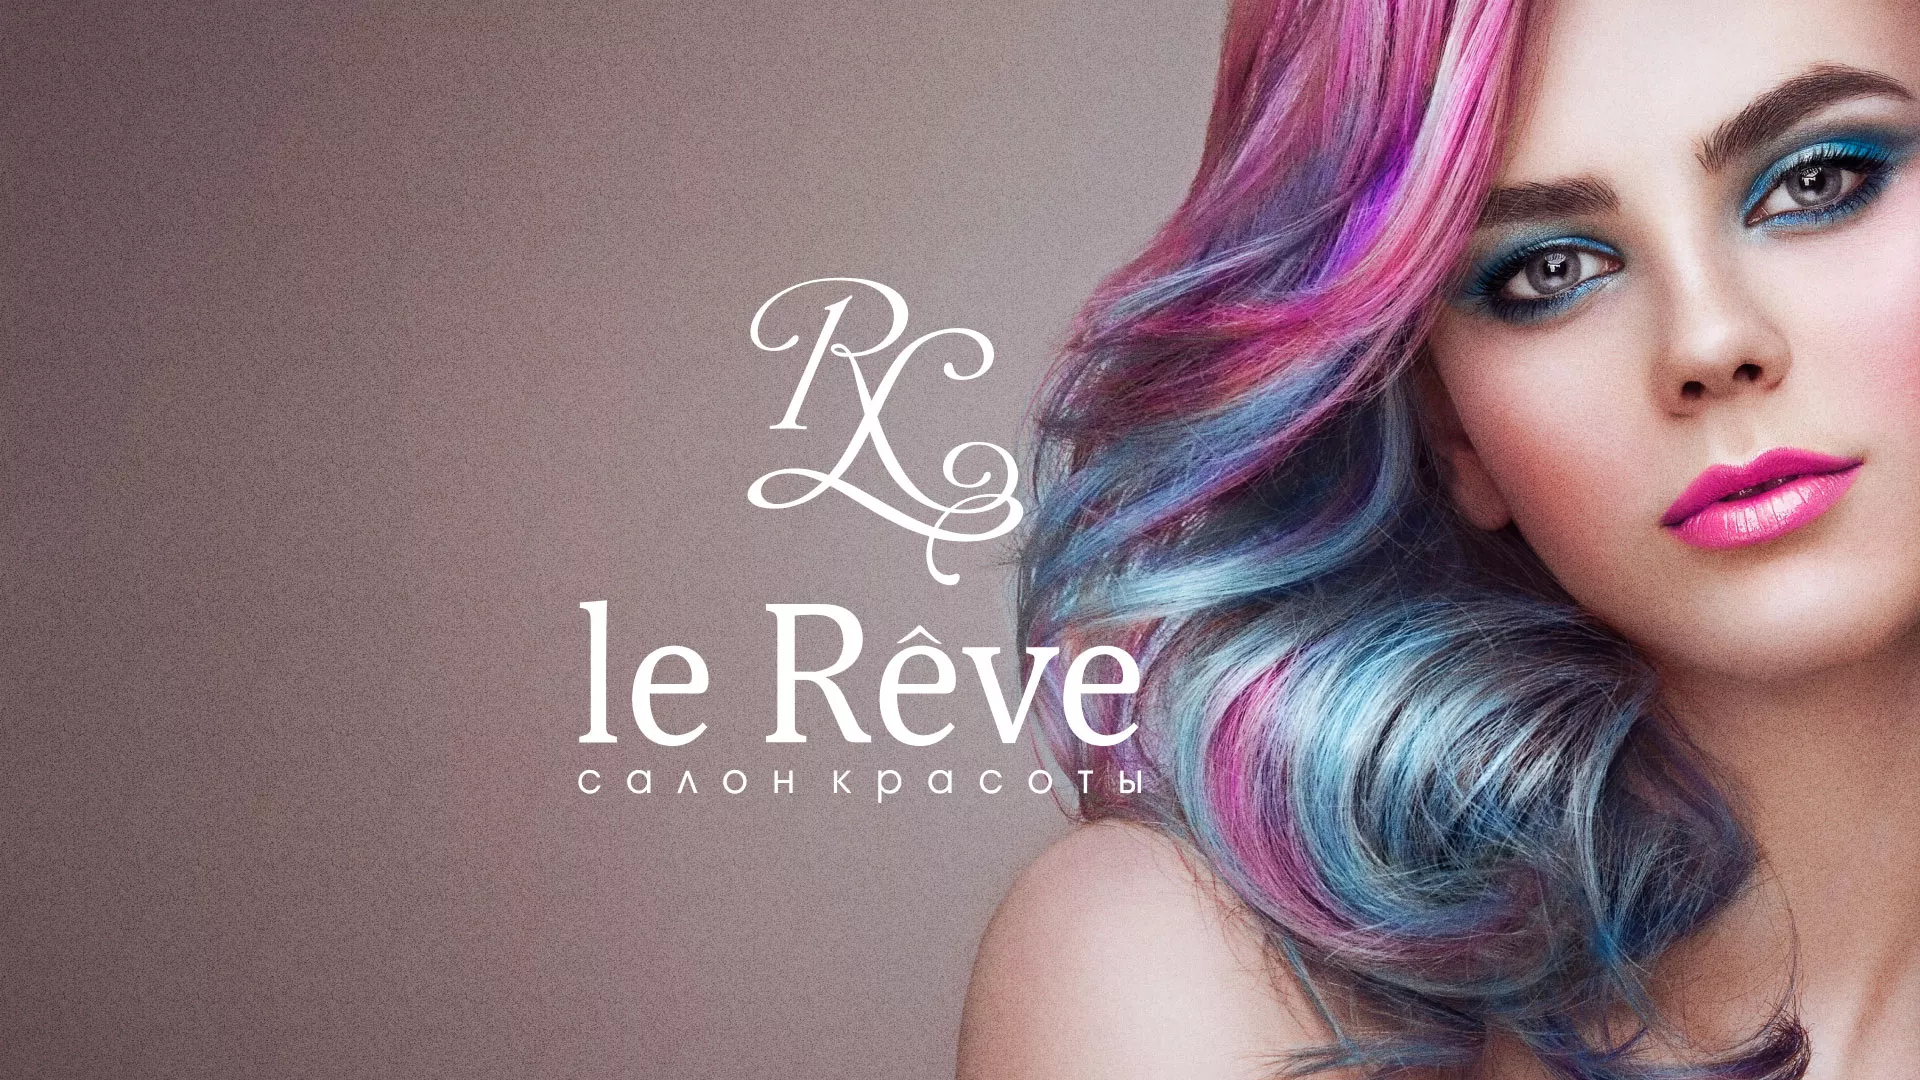 Создание сайта для салона красоты «Le Reve» в Хабаровске